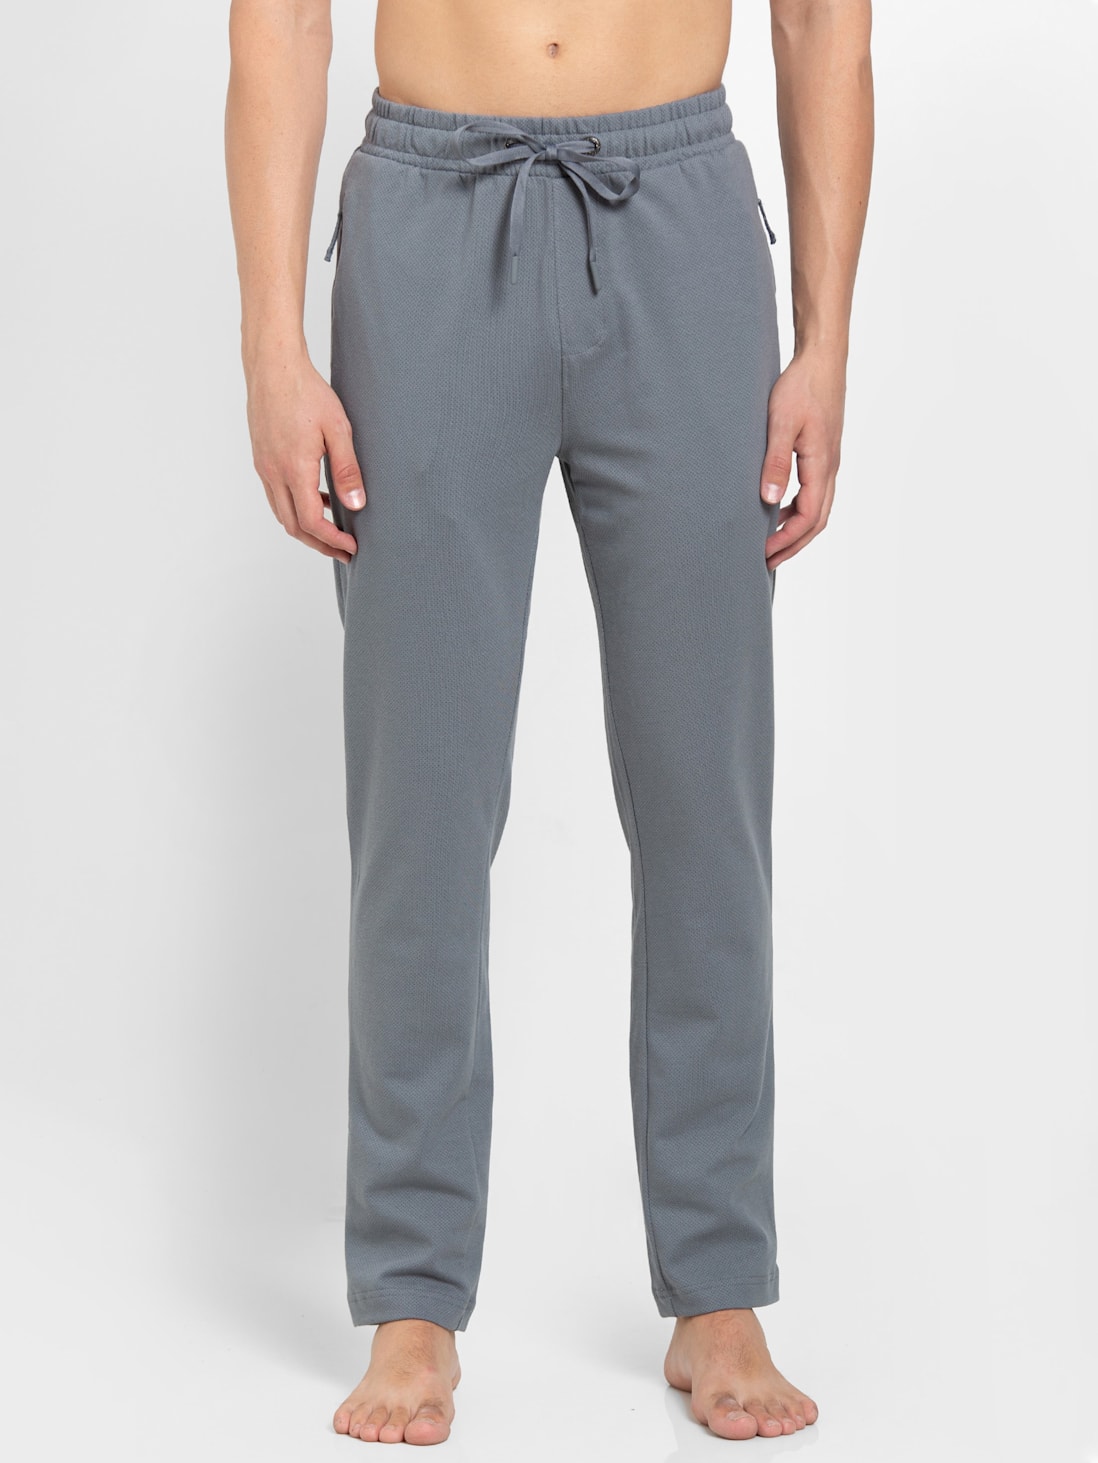 Jockey Men's Cotton Track Pants Loungewear, Leisurewear Sportswear  Relaxed Fit | eBay